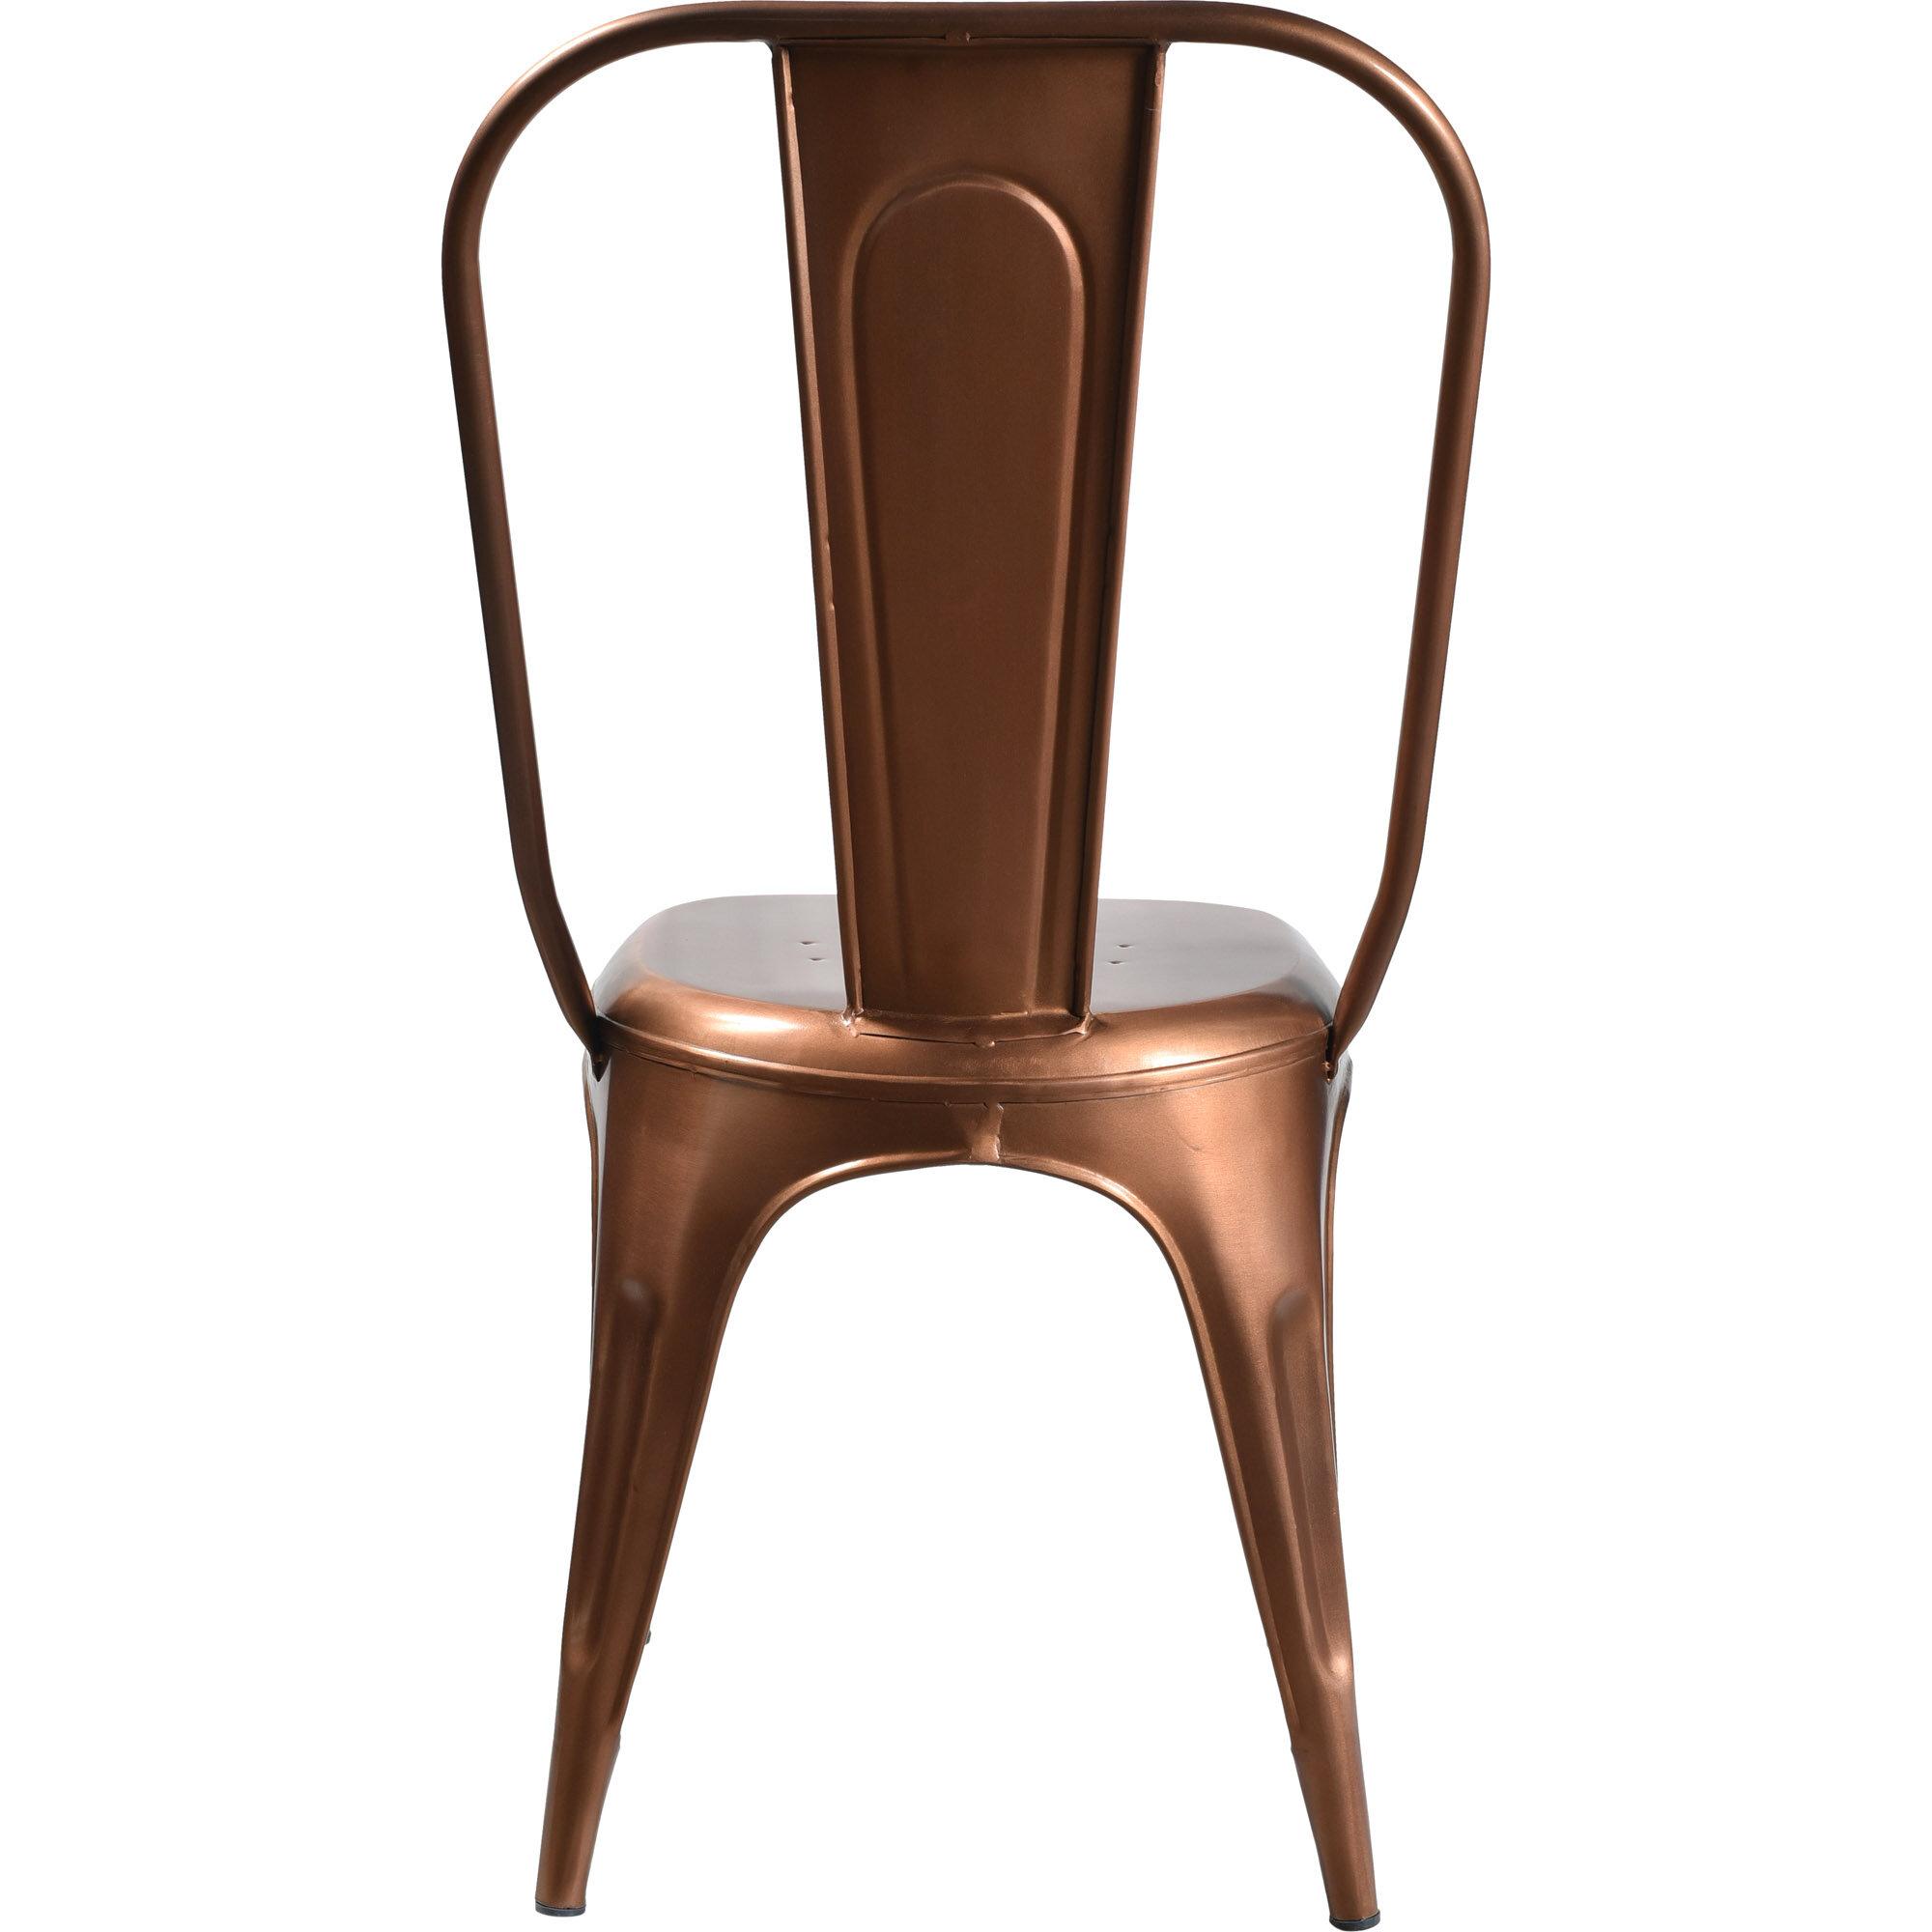  LIVING stol med høj ryg - kobber fra Trademark Living i Jern (Varenr: M01146)